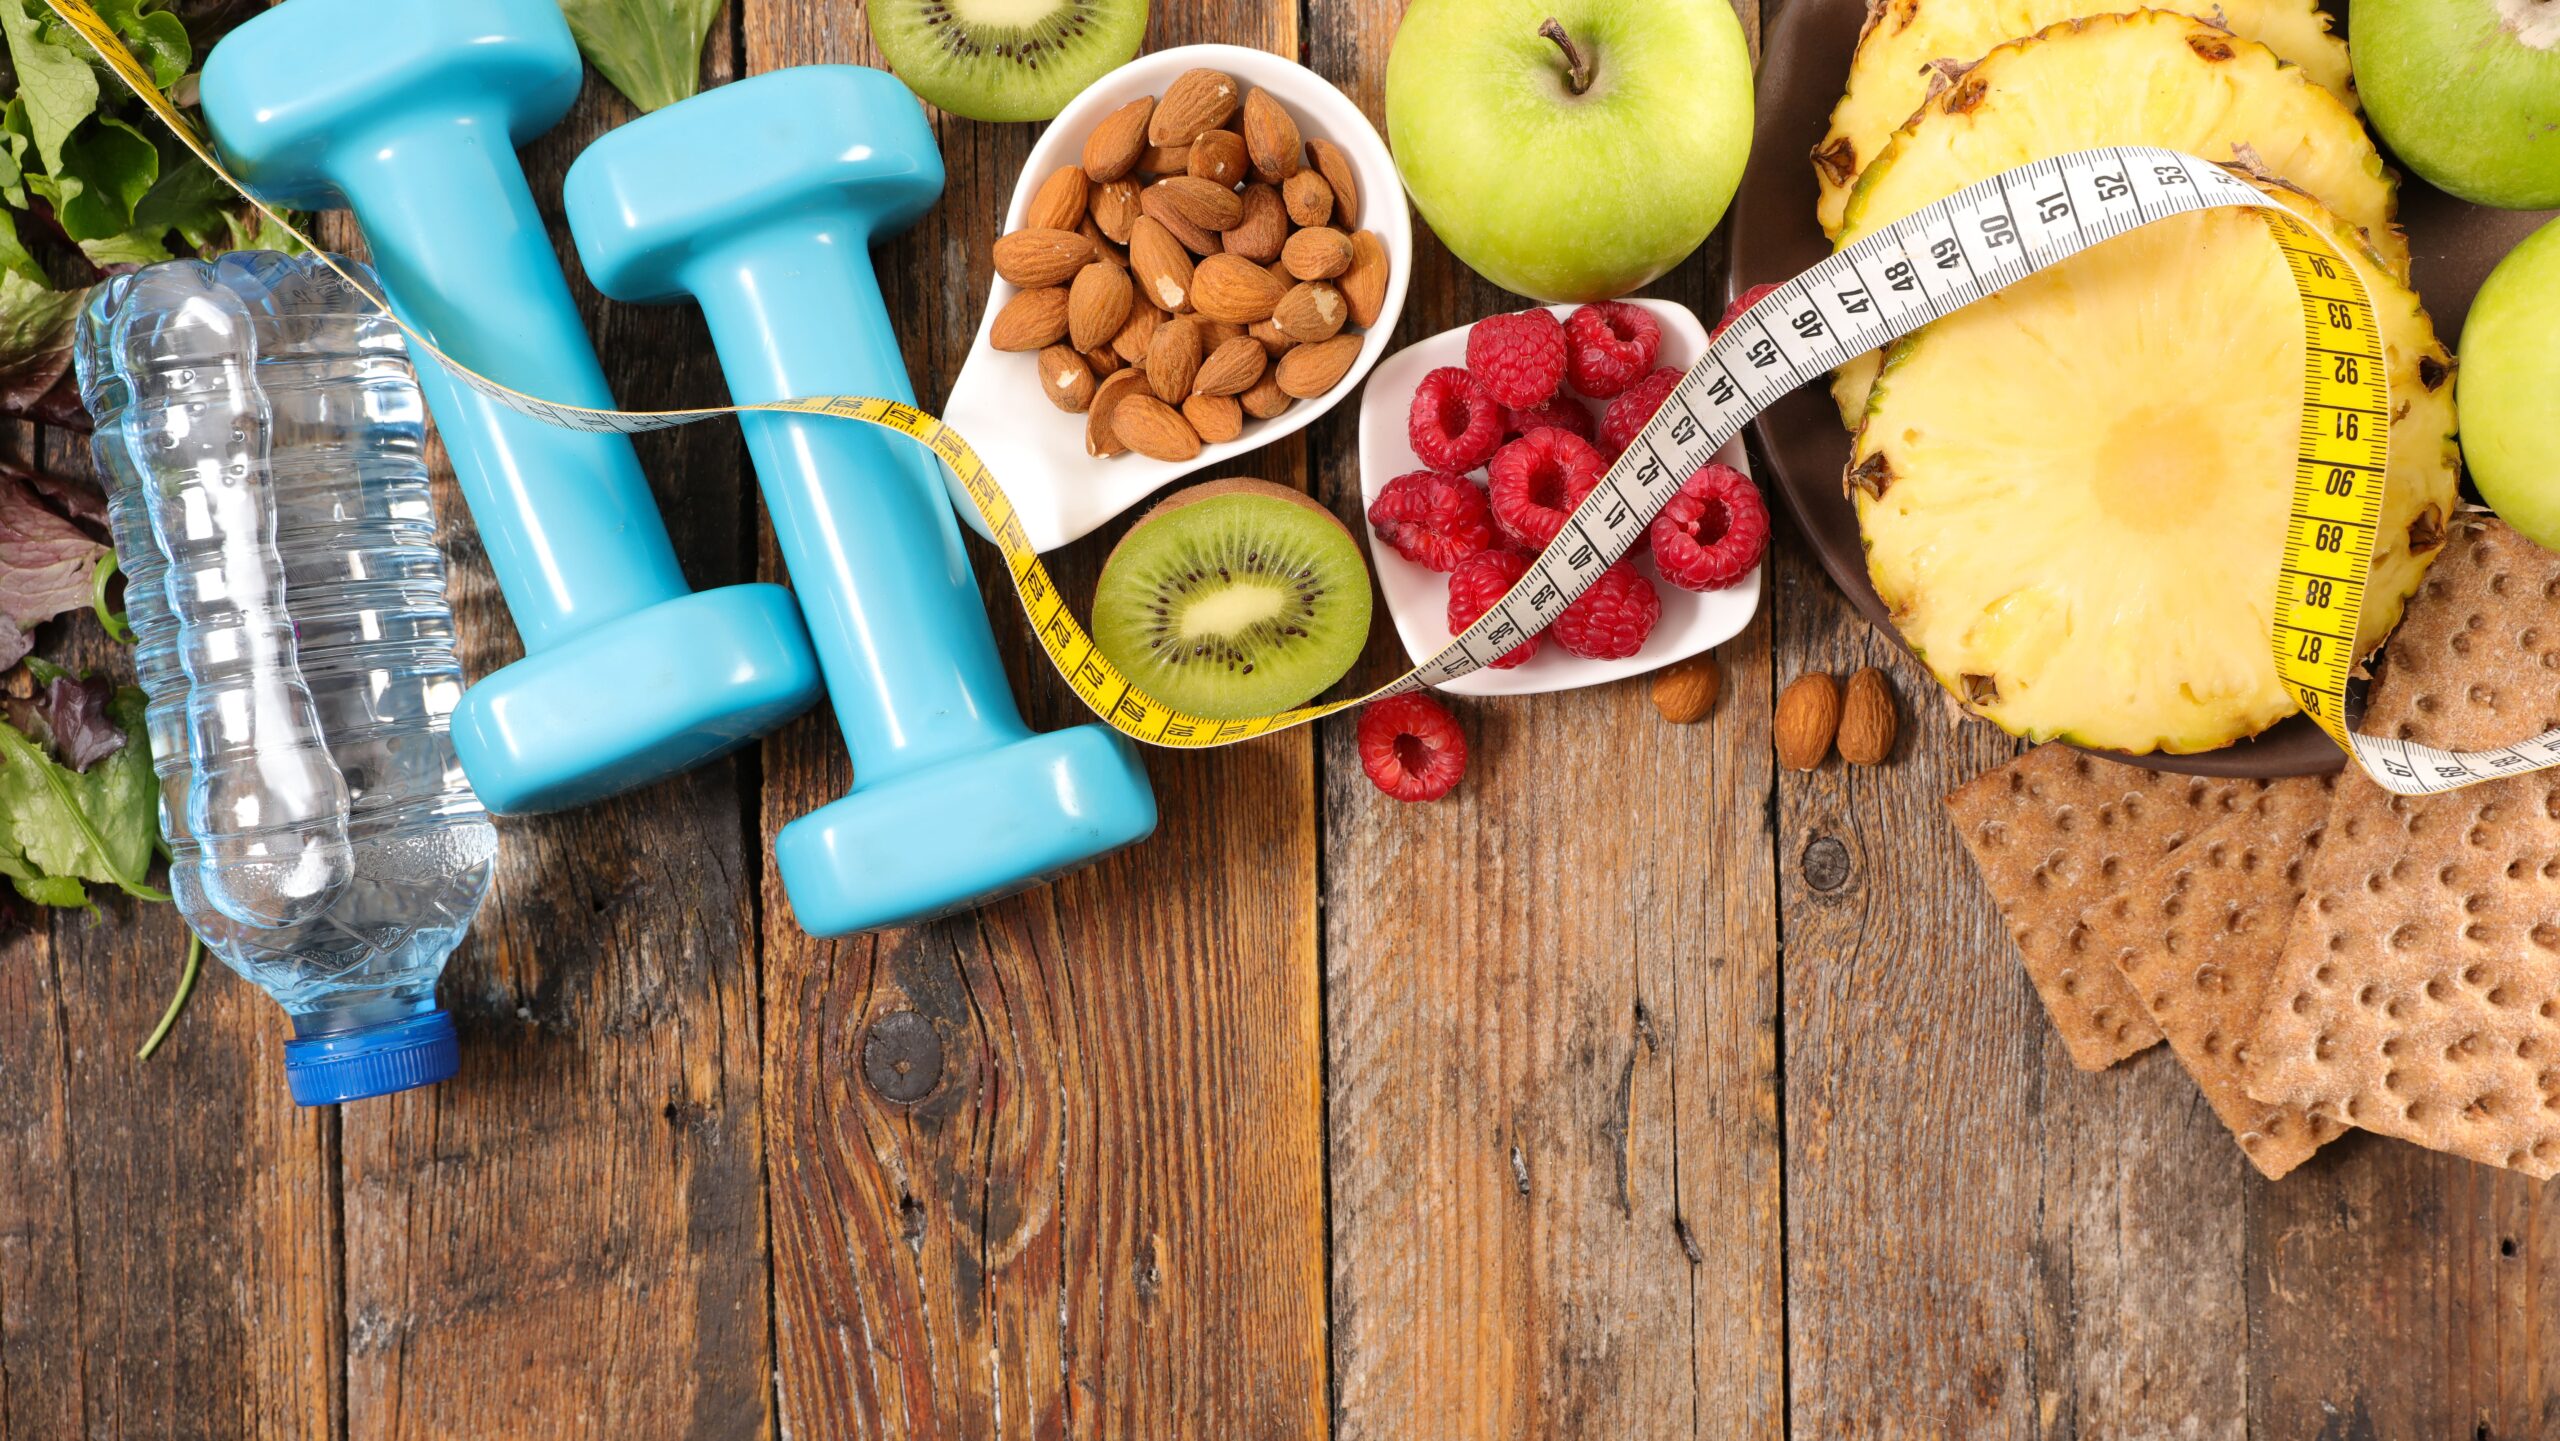 Nutrition, santé, sport, fruits et légumes